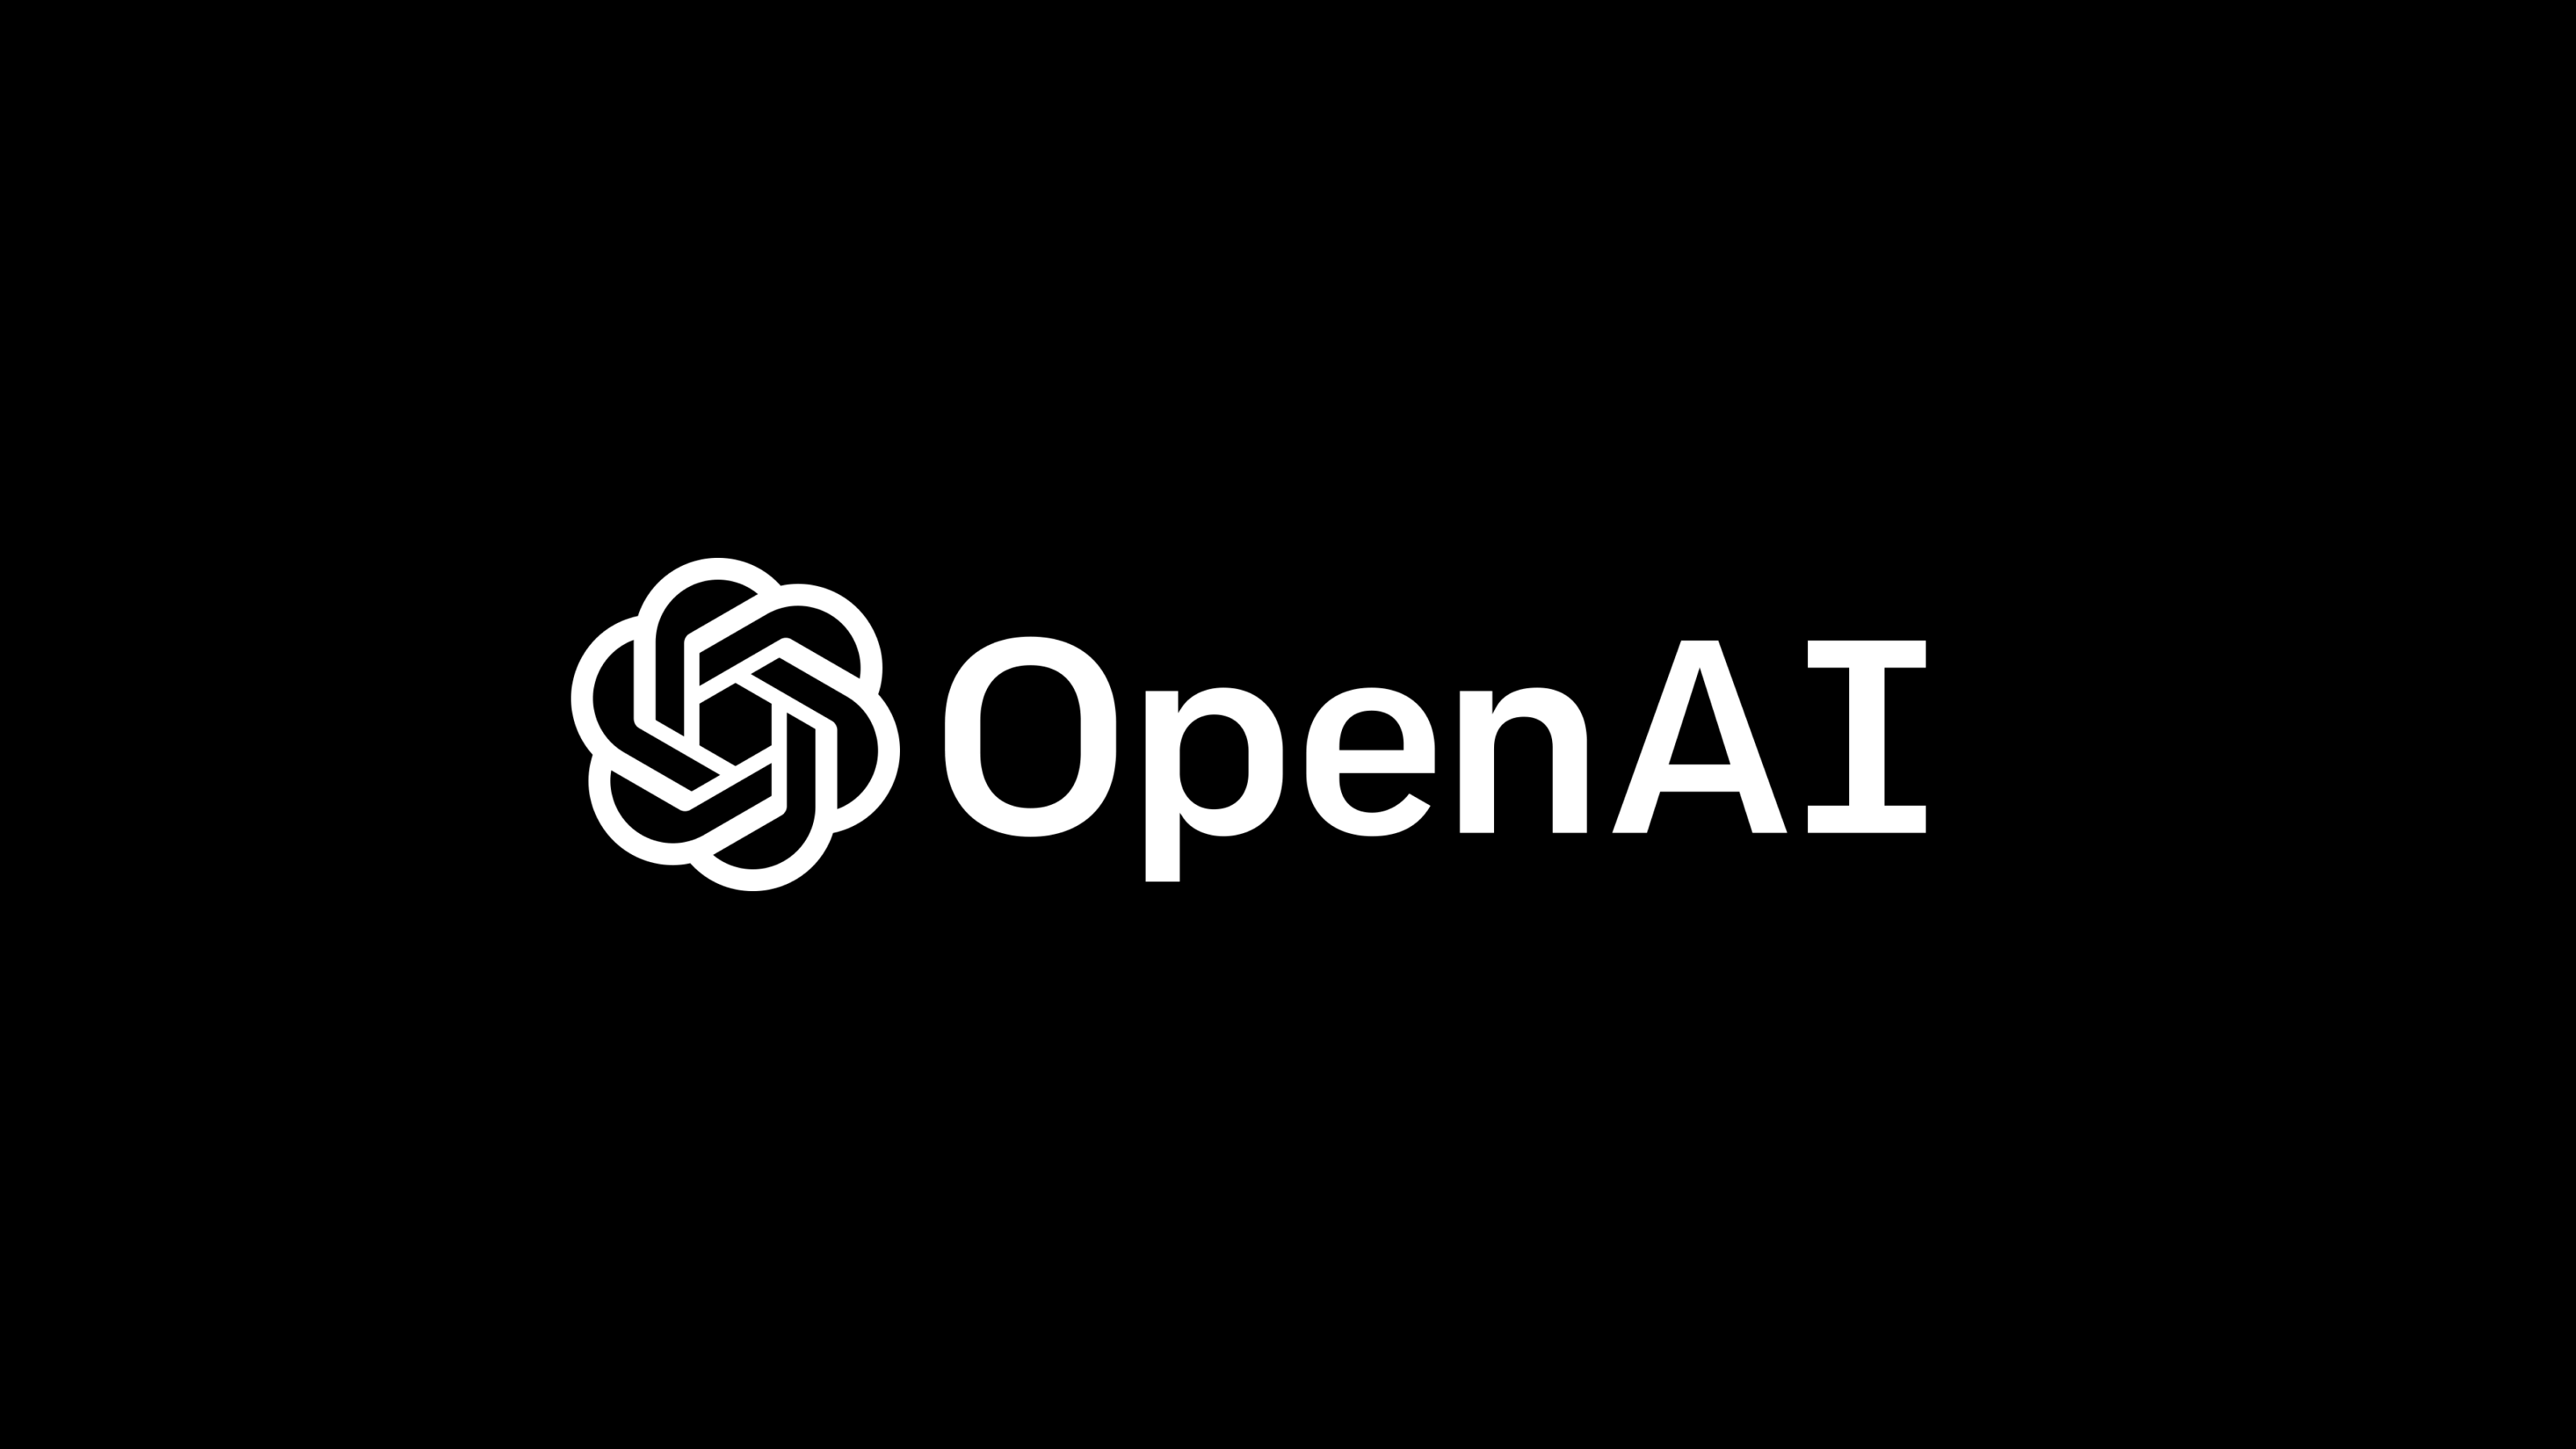 OpenAI lança nova ferramenta para detectar texto gerado por IA